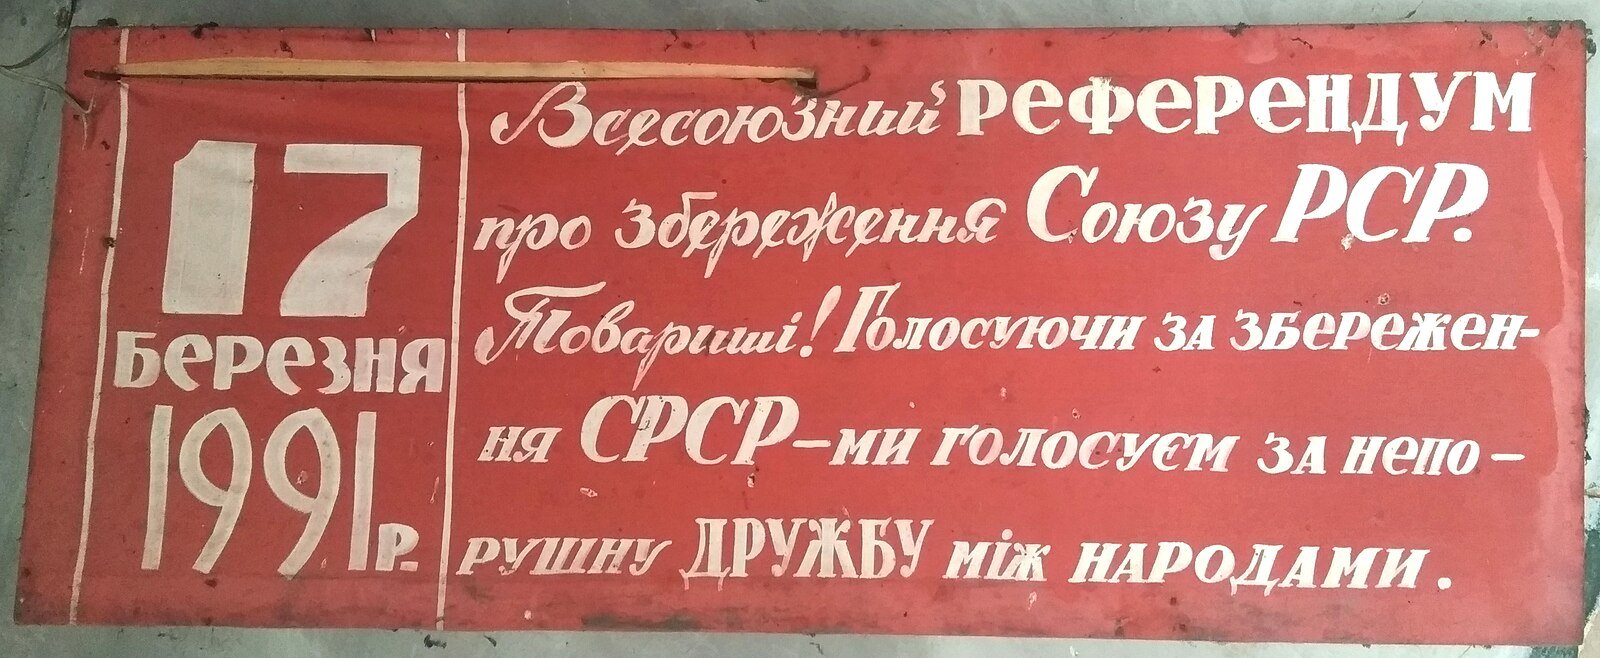 Soviet Union Referendum, 1991